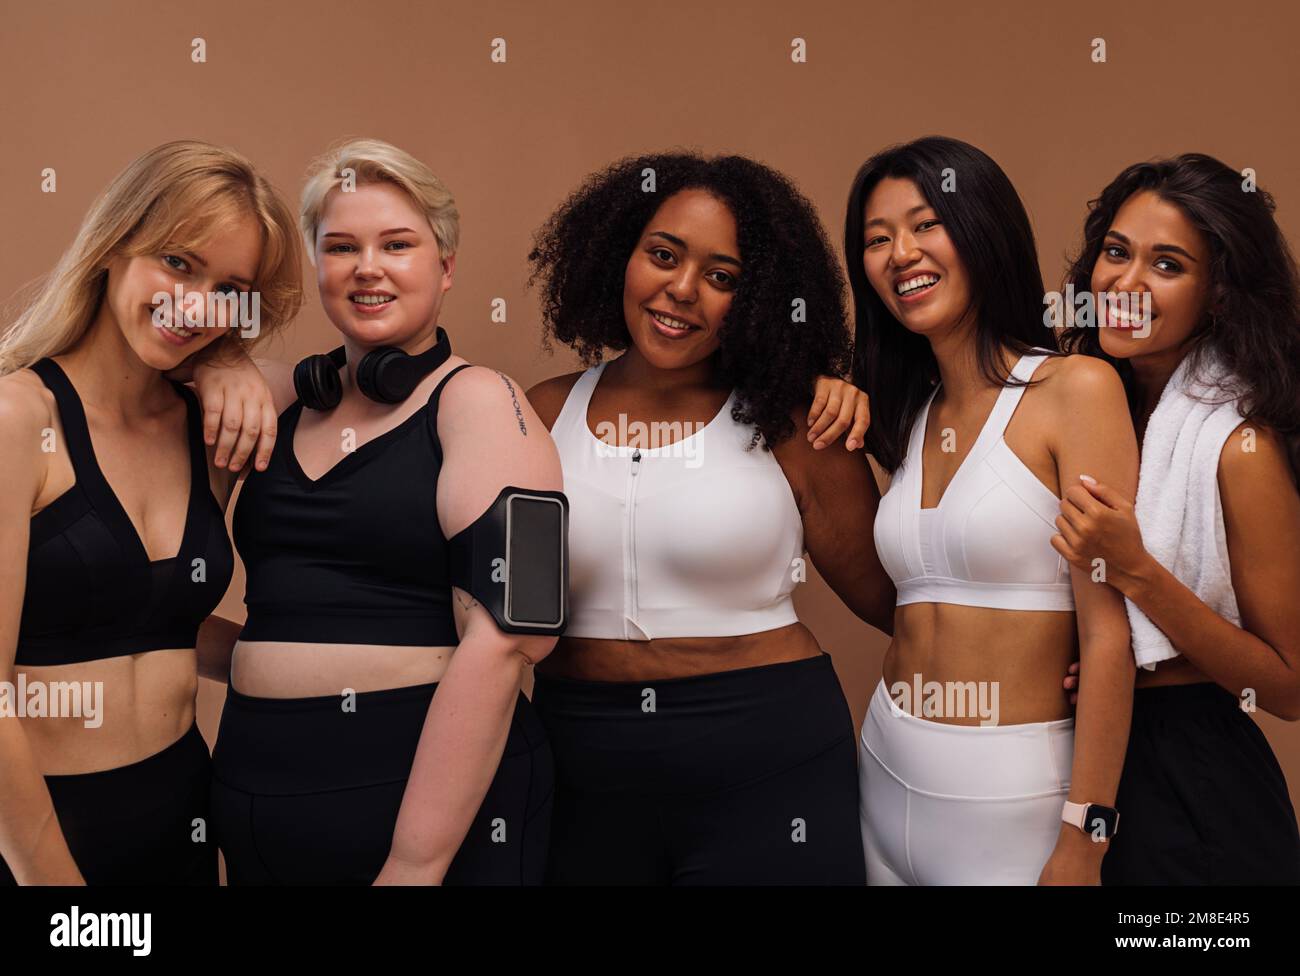 Fünf lächelnde Frauen mit verschiedenen Körpertypen und Hautfarbe, die vor braunem Hintergrund posieren Stockfoto